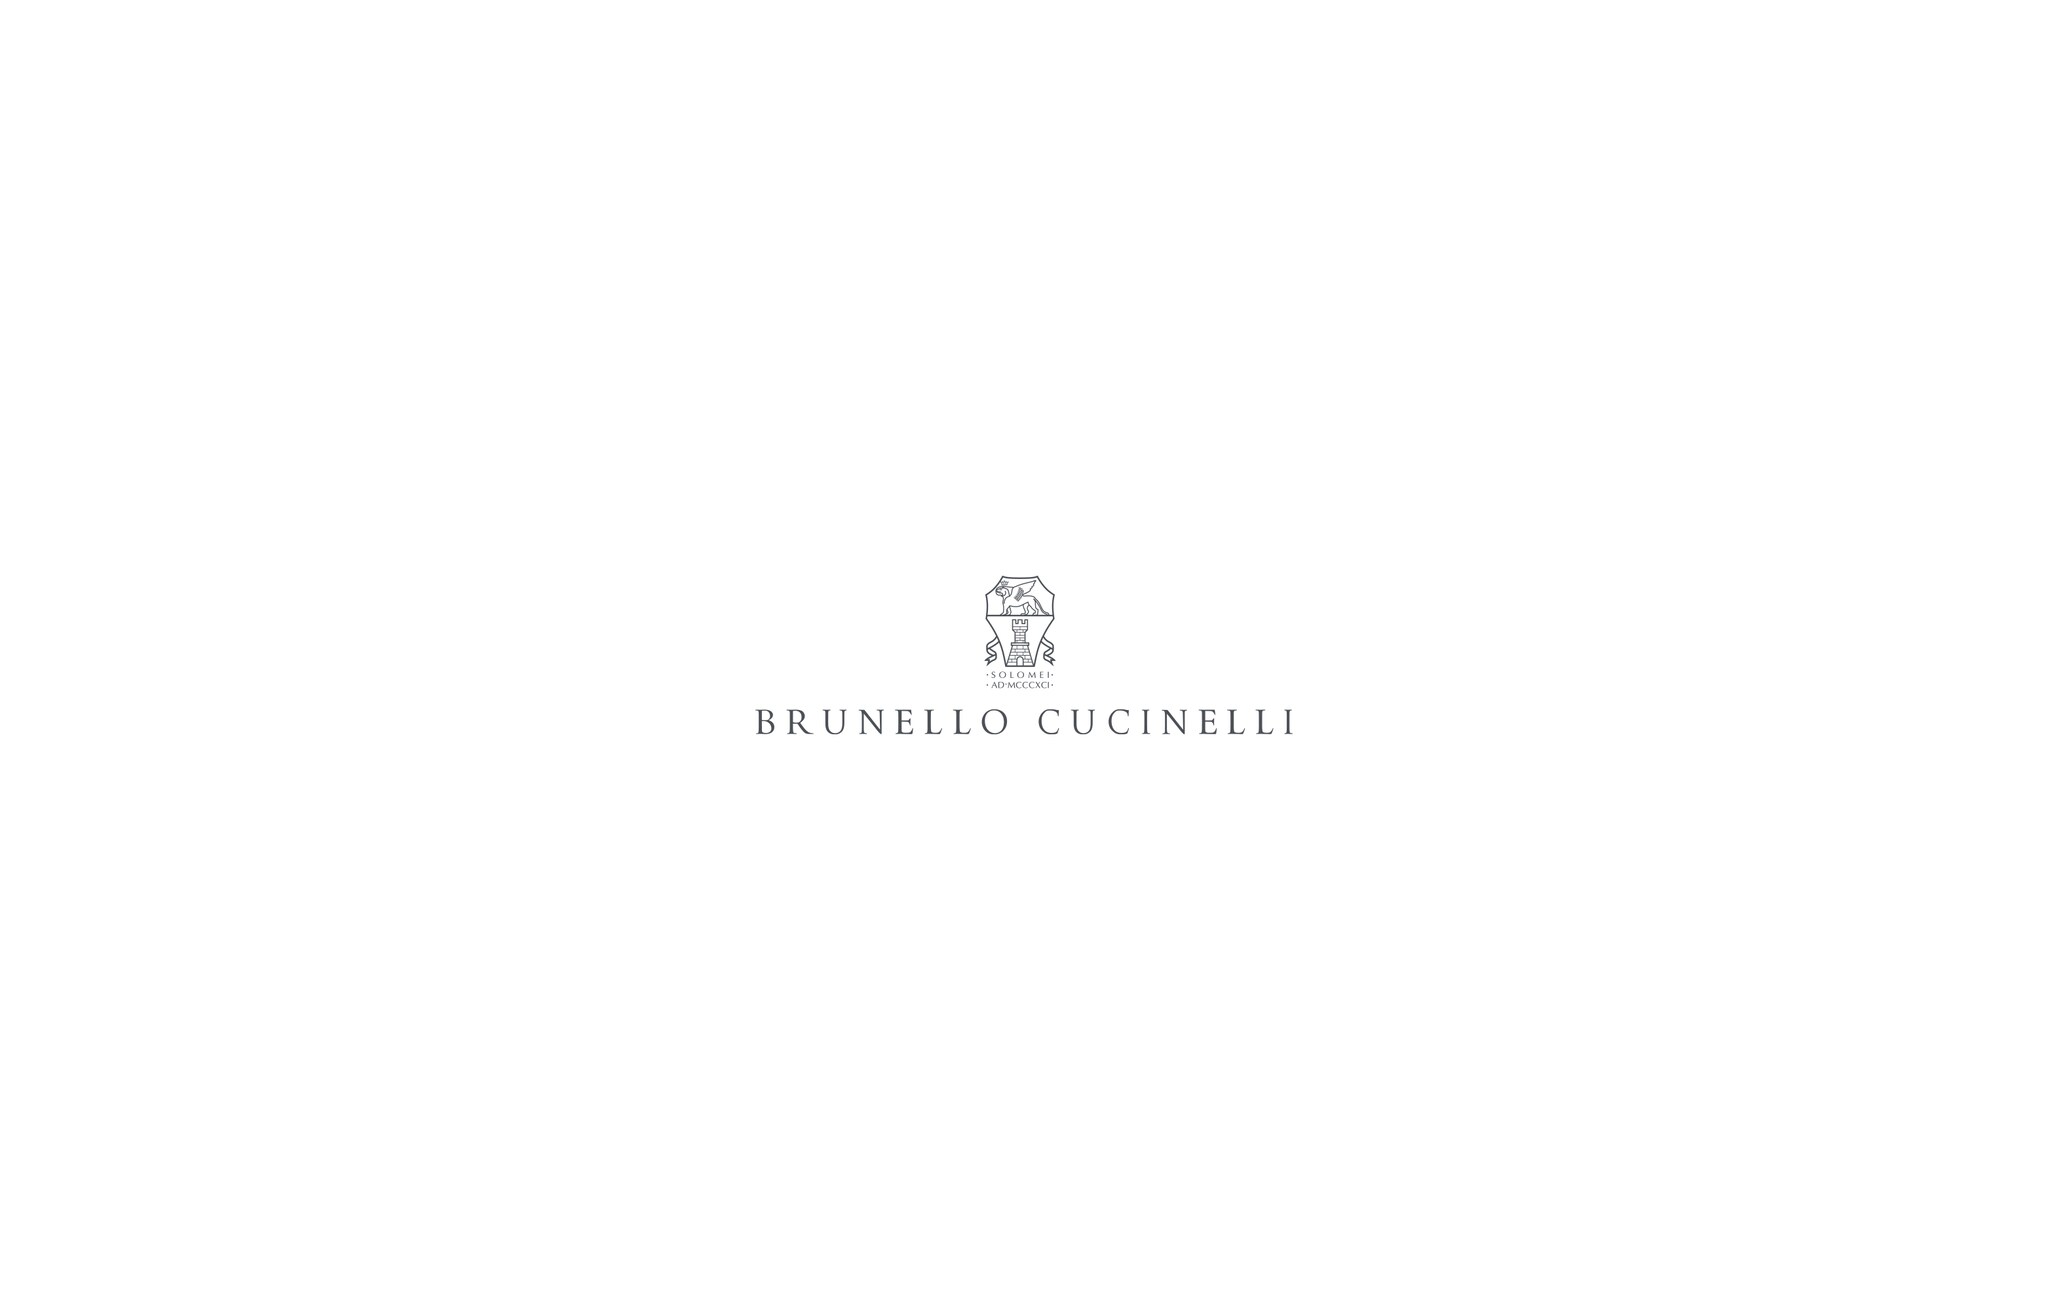  Cigarette trousers Off-White Woman - Brunello Cucinelli 